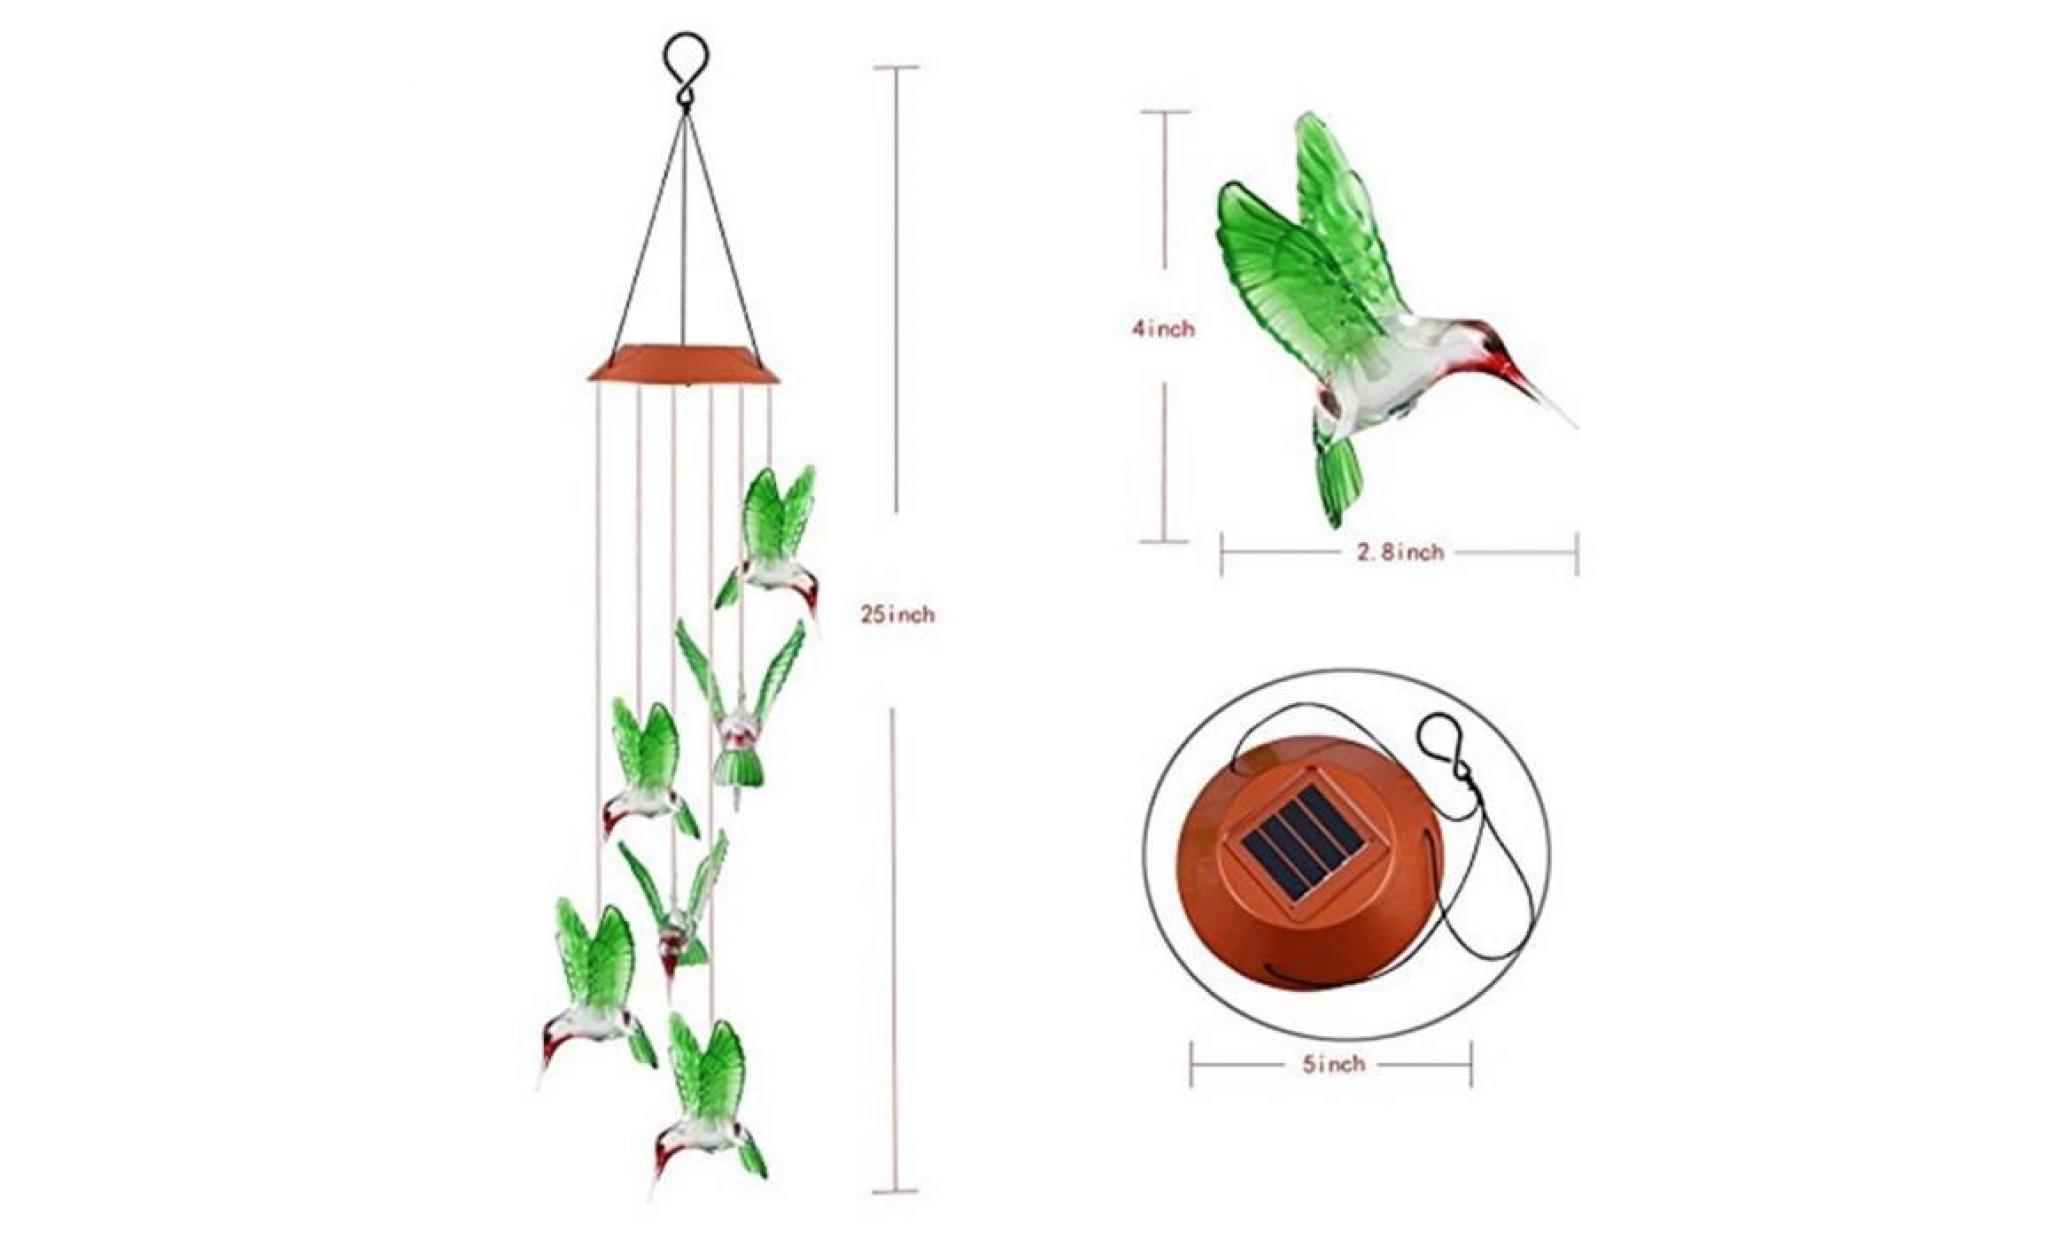 couleur changeant le vent solaire de colibri de carillon de vent de led pour l'éclairage de jardinage   lzx70901733 pas cher